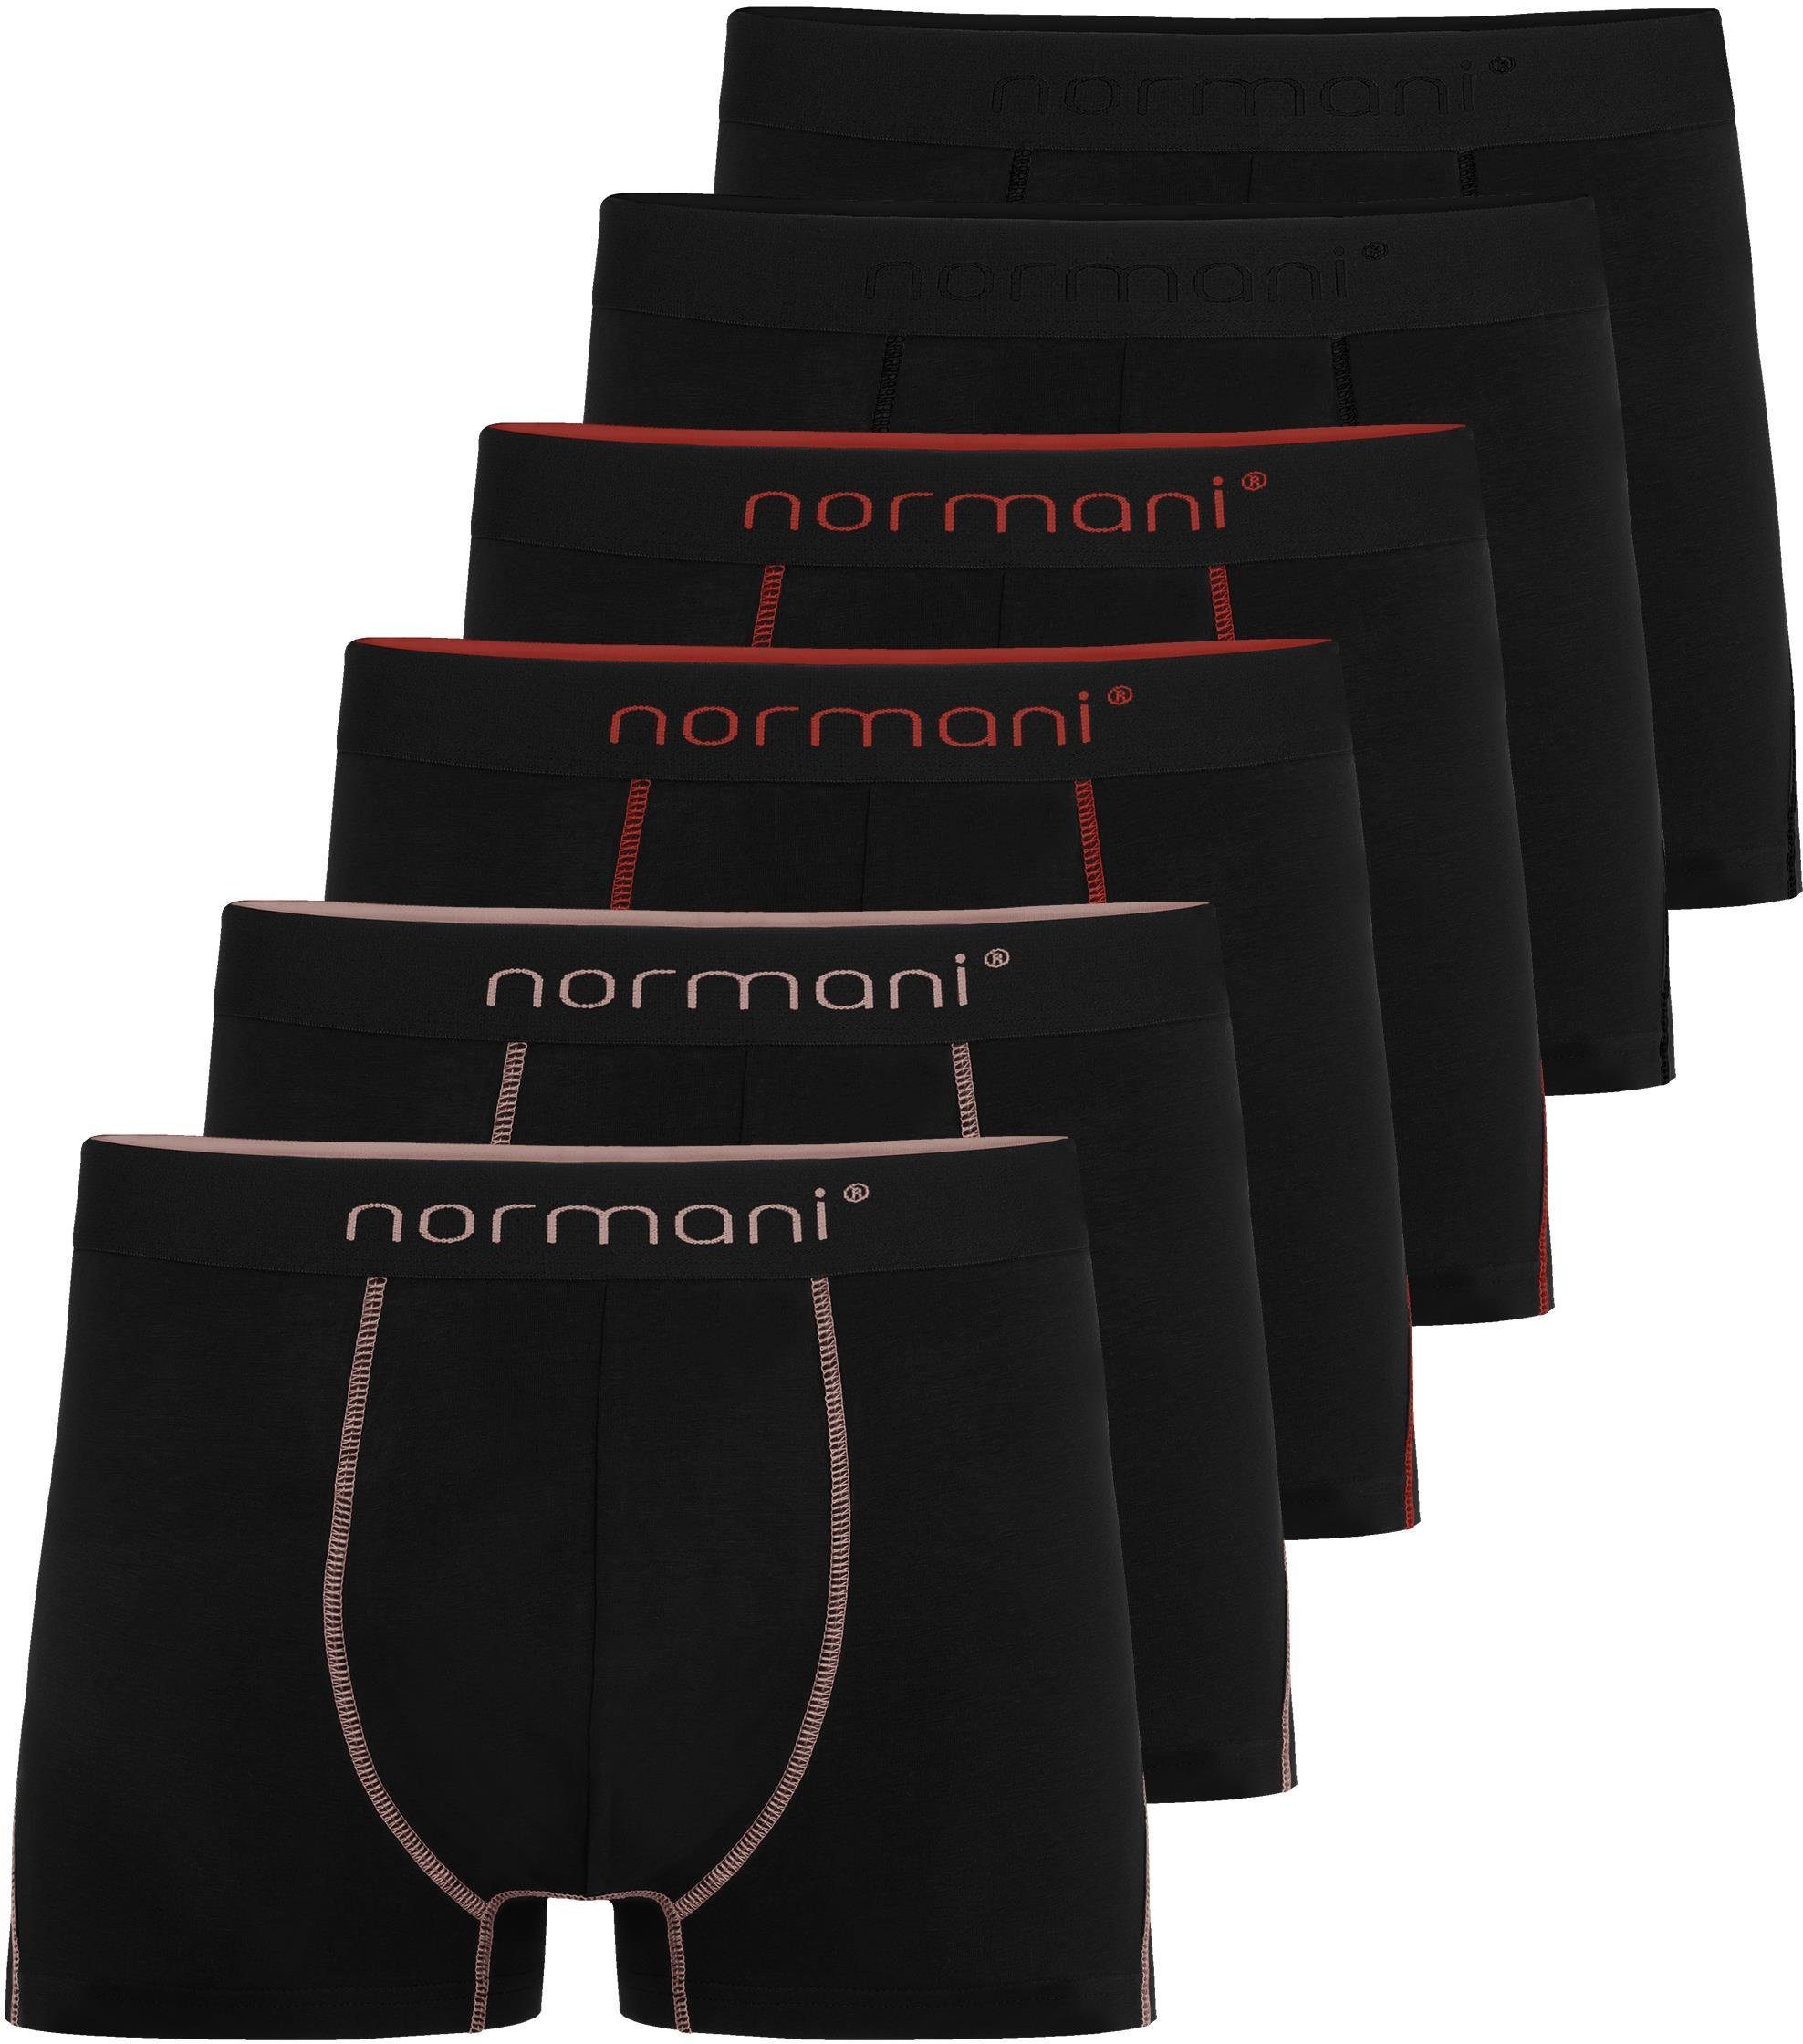 normani Boxershorts 6 Herren Baumwoll-Boxershorts Unterhose aus atmungsaktiver Baumwolle für Männer Lachs/Rot/Schwarz